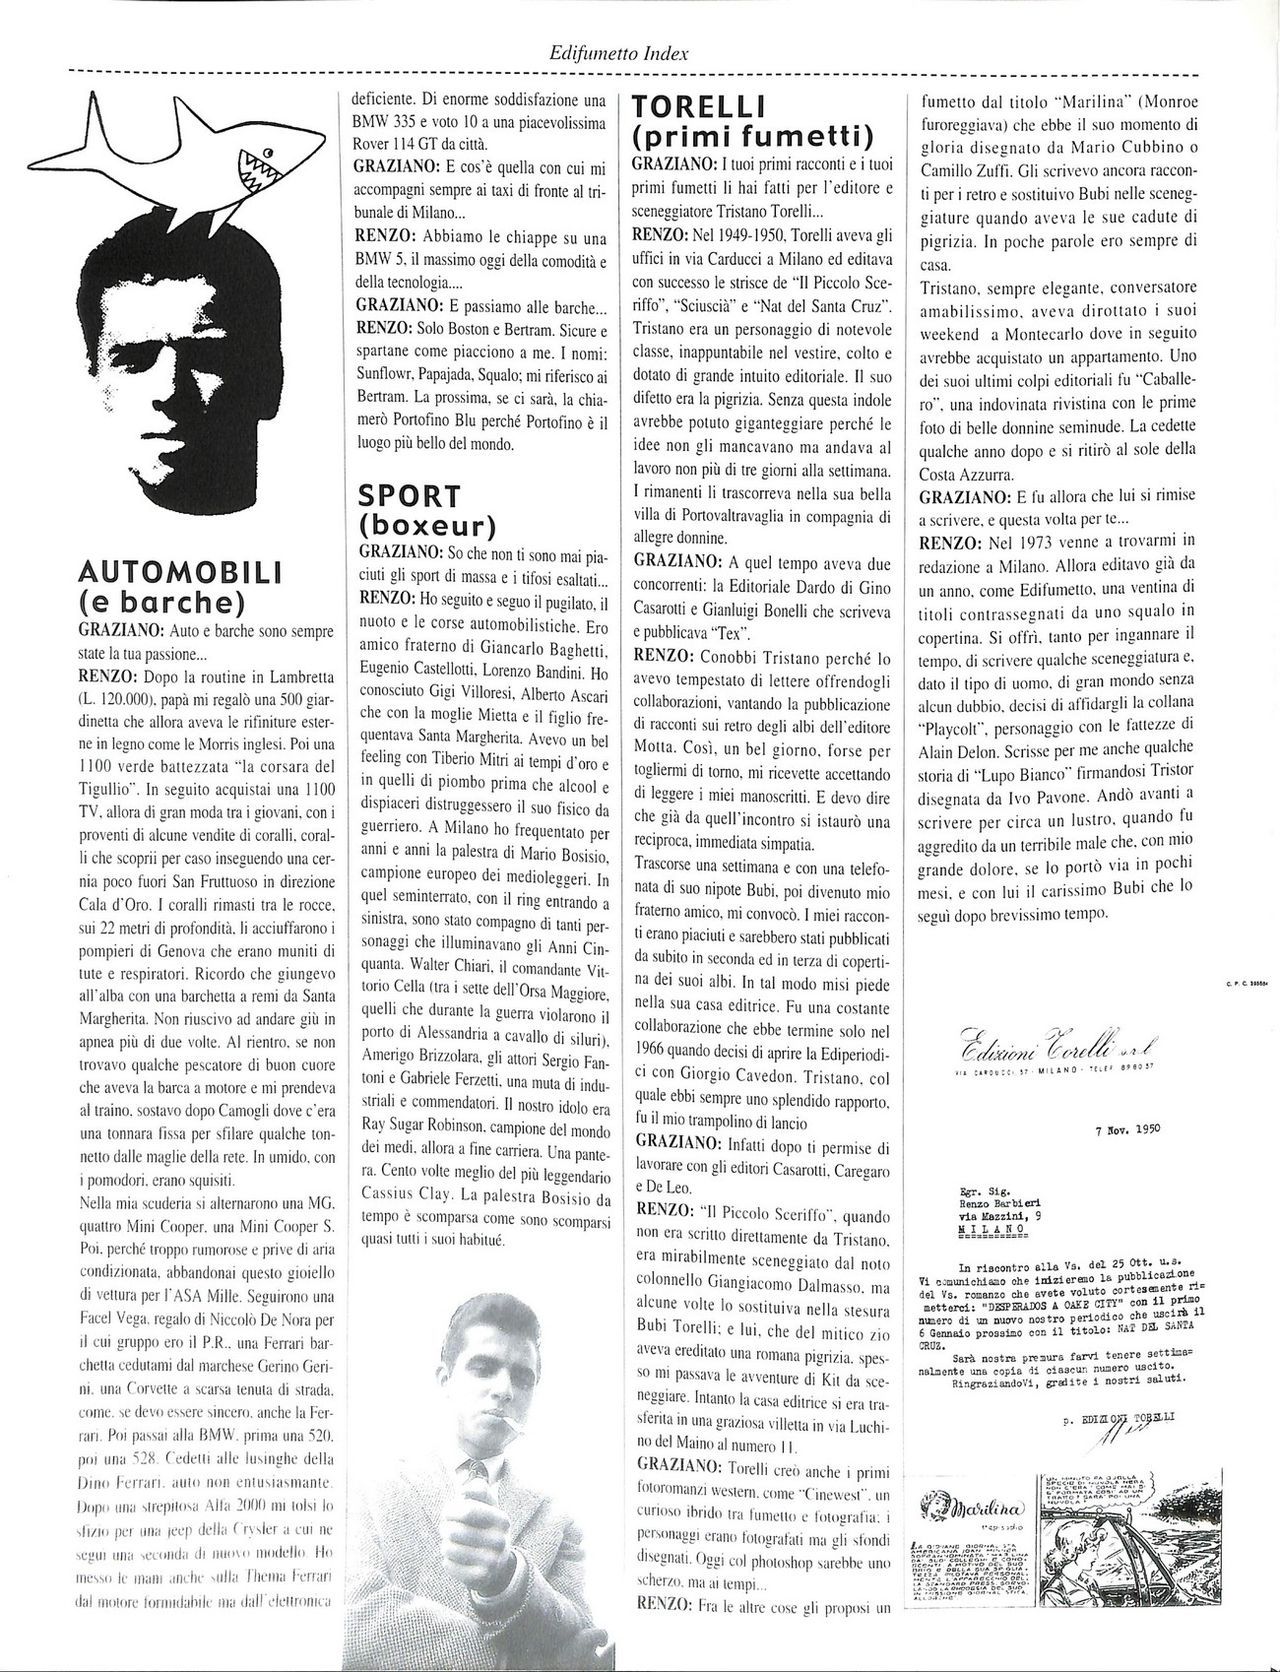 EdiFumetto index (Graziano Origa, 2002) [Italian] 9